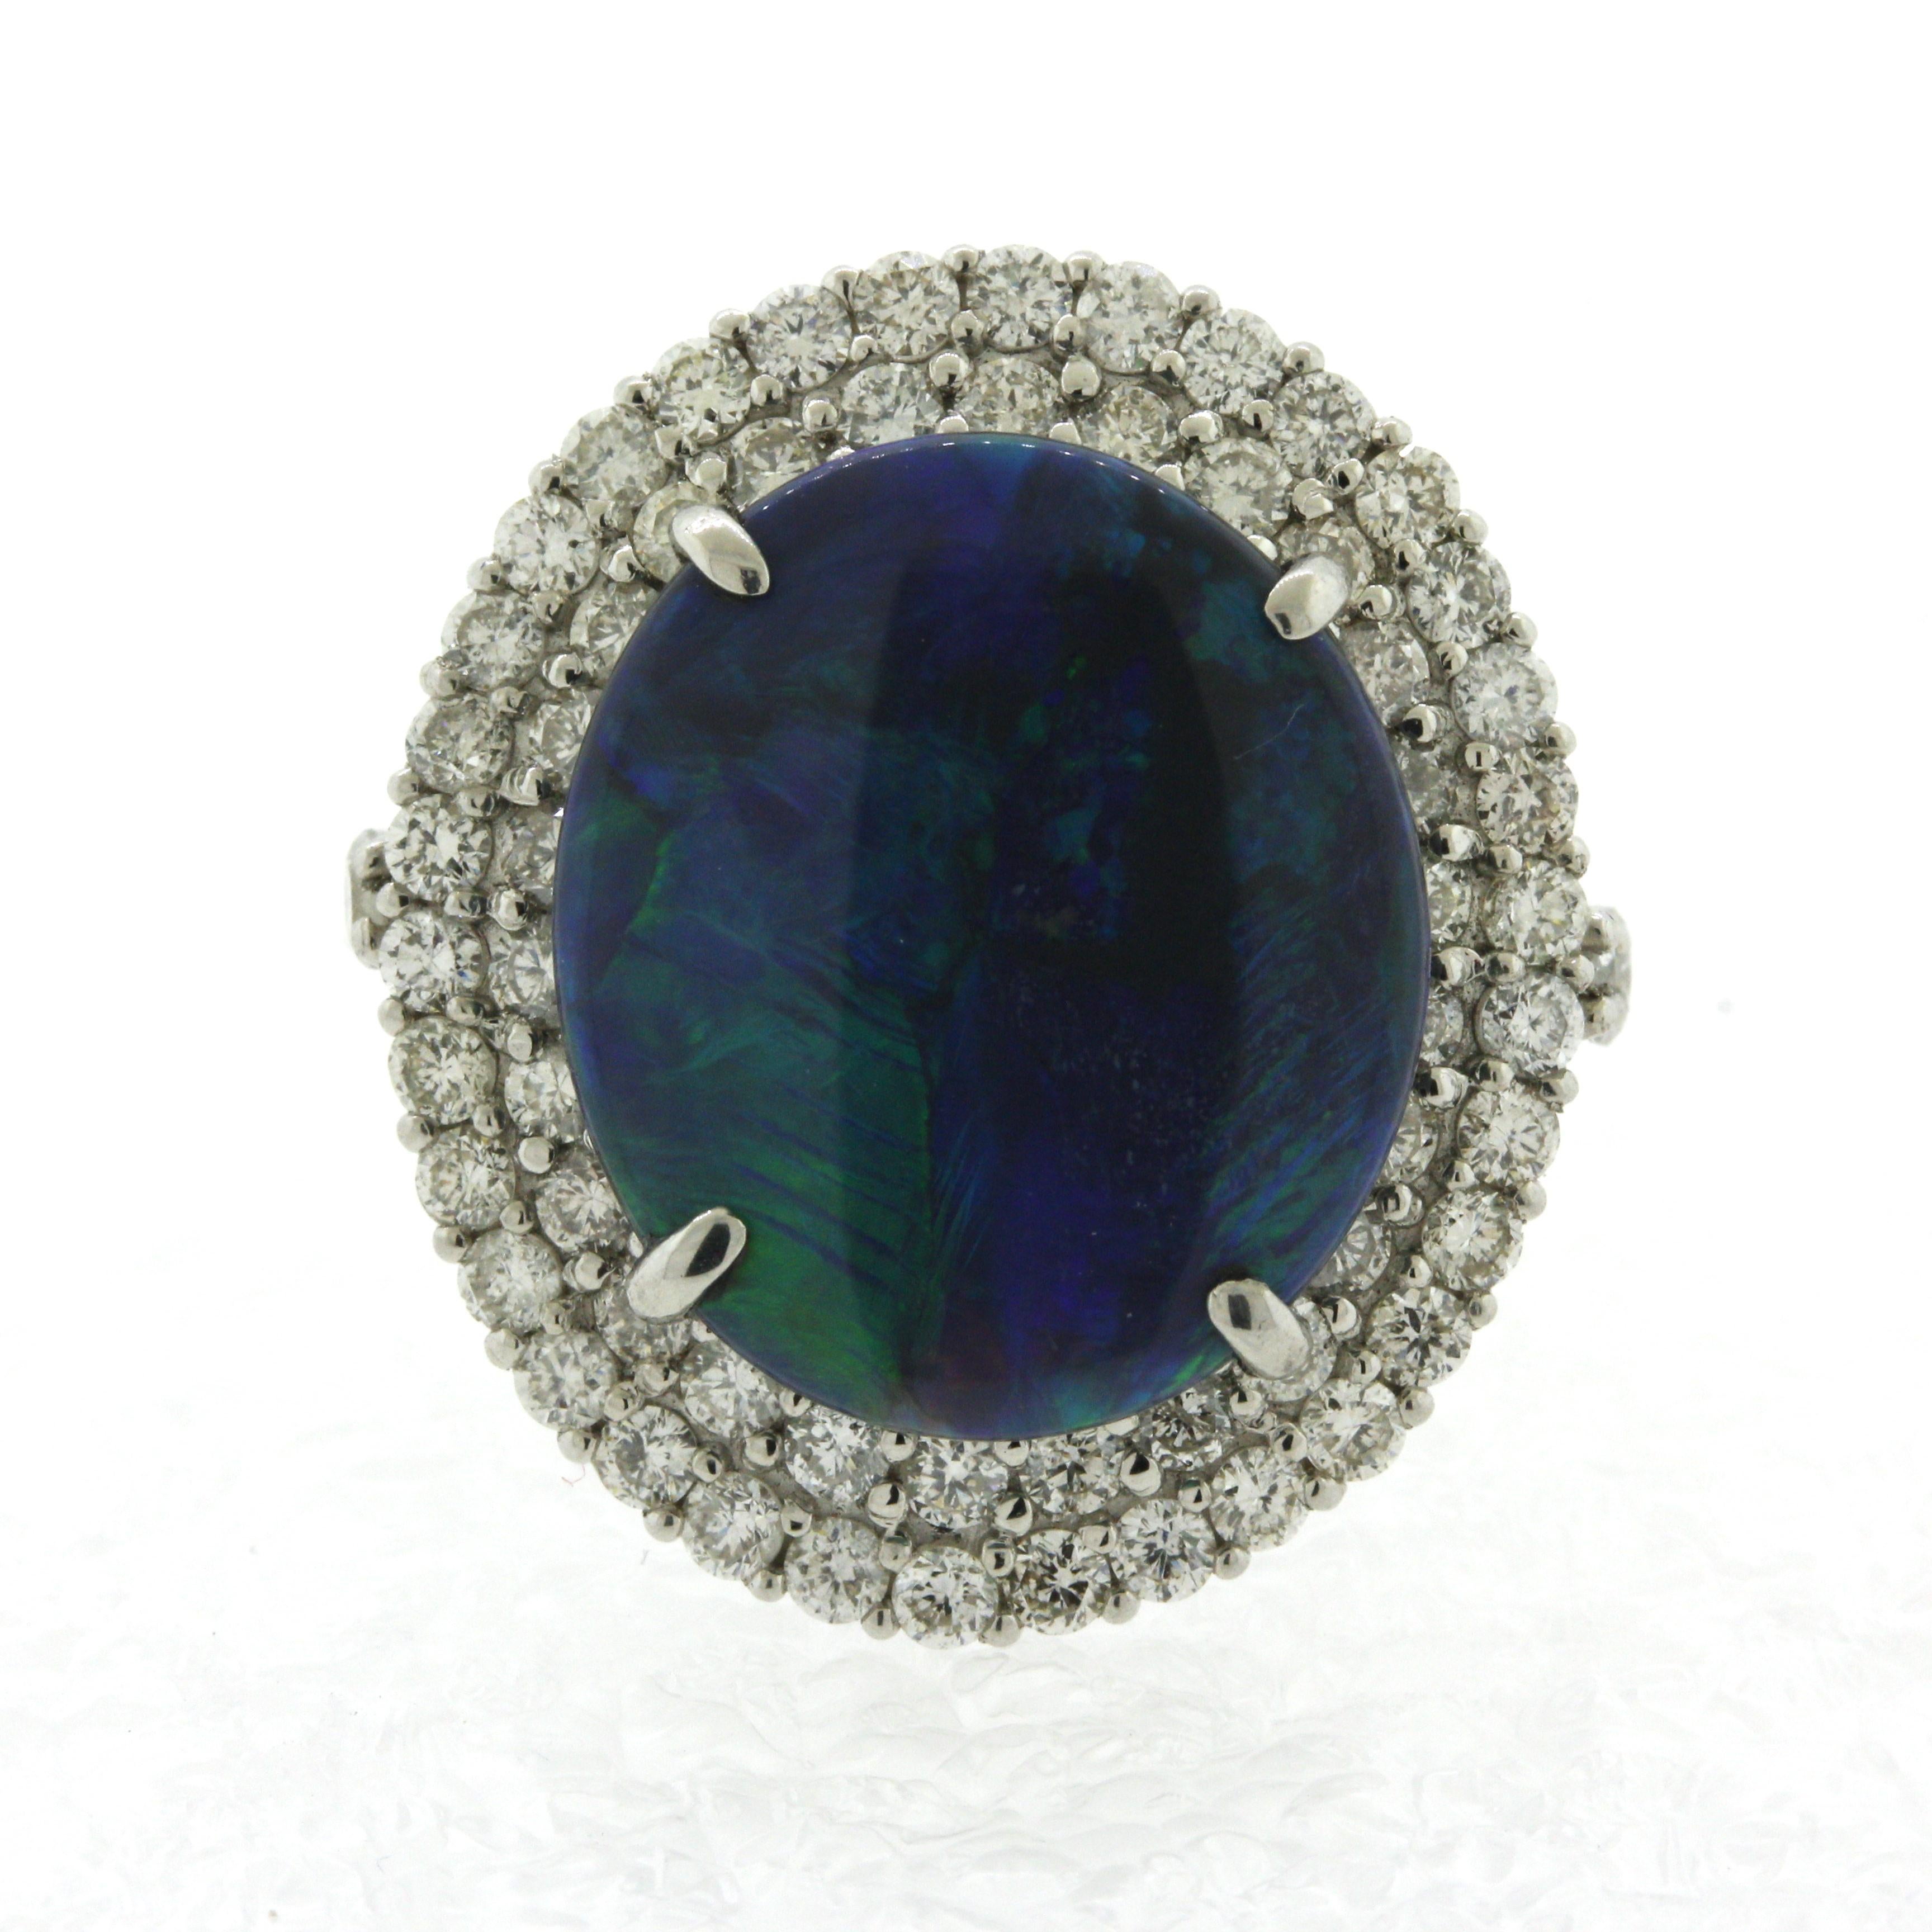 Une opale noire classique d'Australie avec un beau jeu de couleurs bleu-vert. L'opale pèse 2,01 carats et a un corps de couleur noire profonde permettant aux éclats de bleu et de vert de briller et de contraster avec le corps. Elle est complétée par